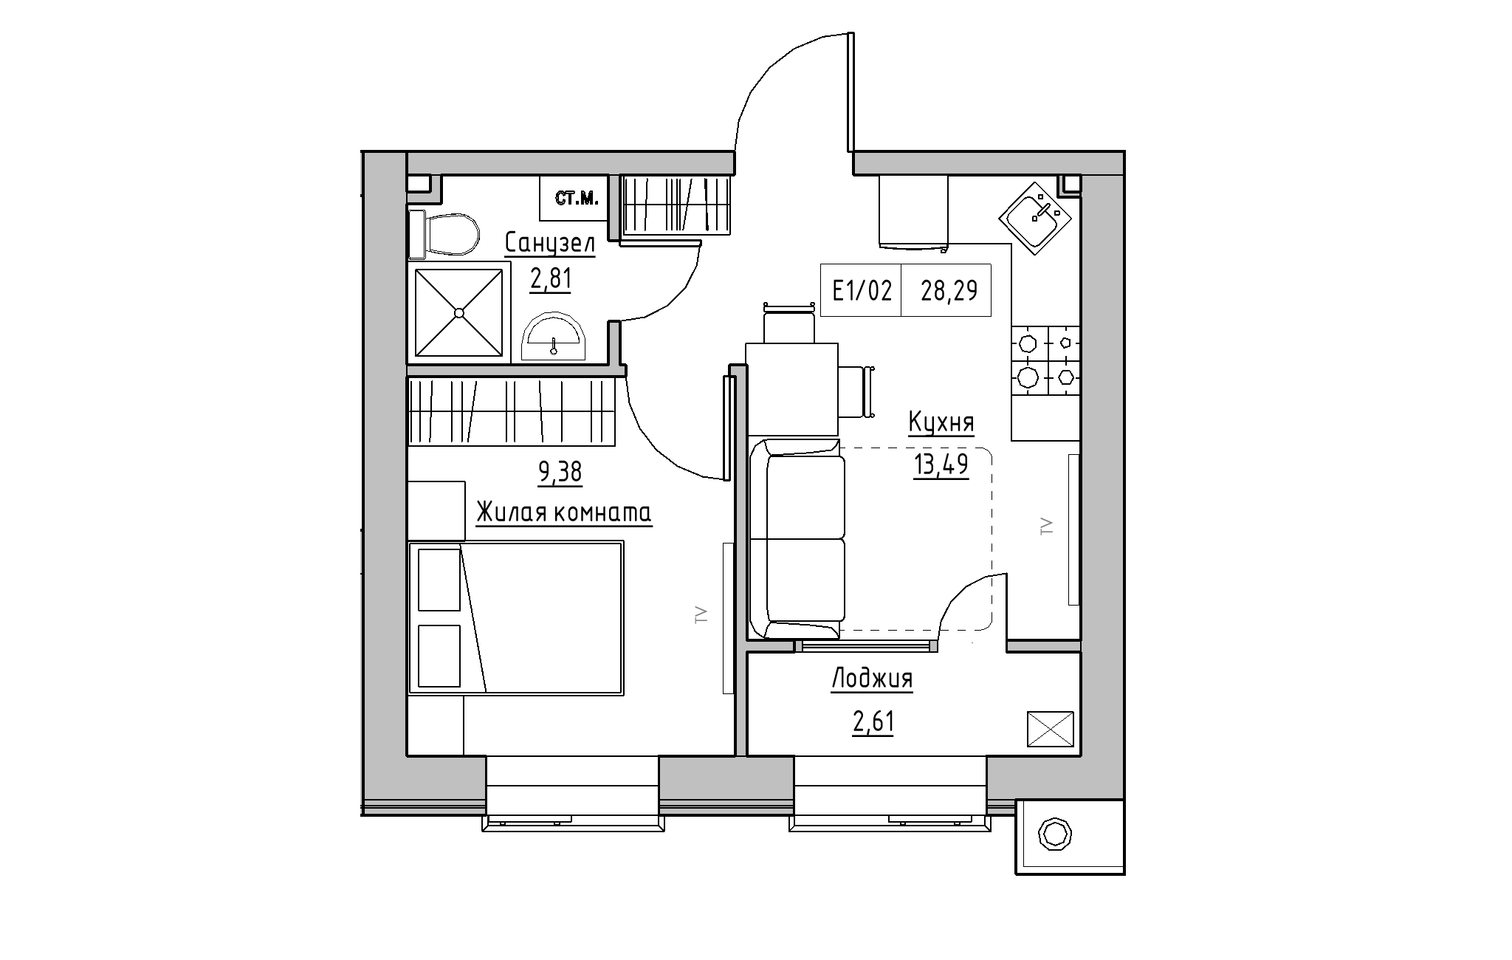 Планування 1-к квартира площею 28.29м2, KS-013-02/0013.